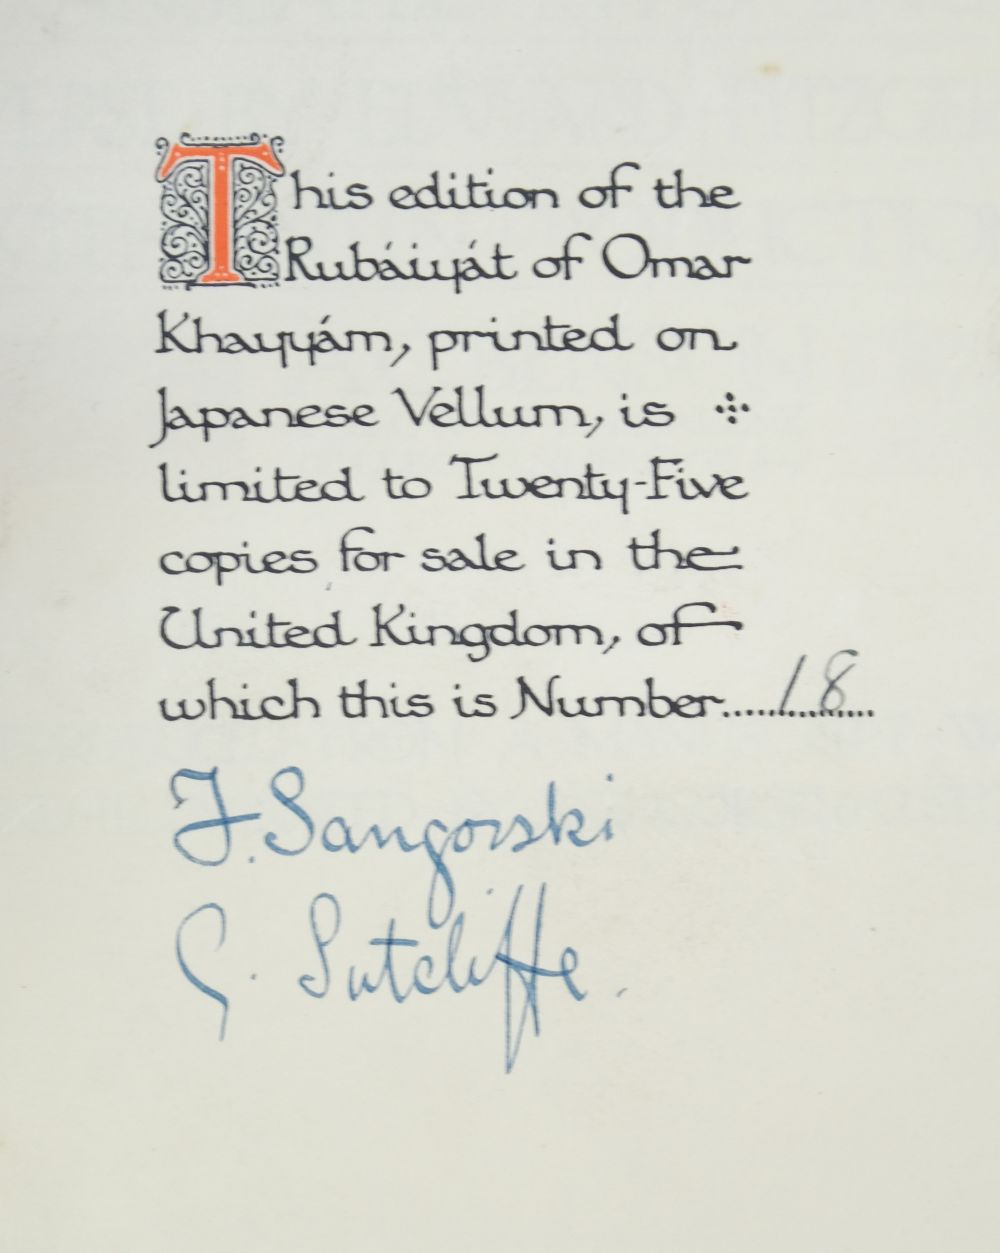 Sangorski & Sutcliffe Binding. Rubaiyat of Omar Khayyam, 1911 - Image 9 of 15